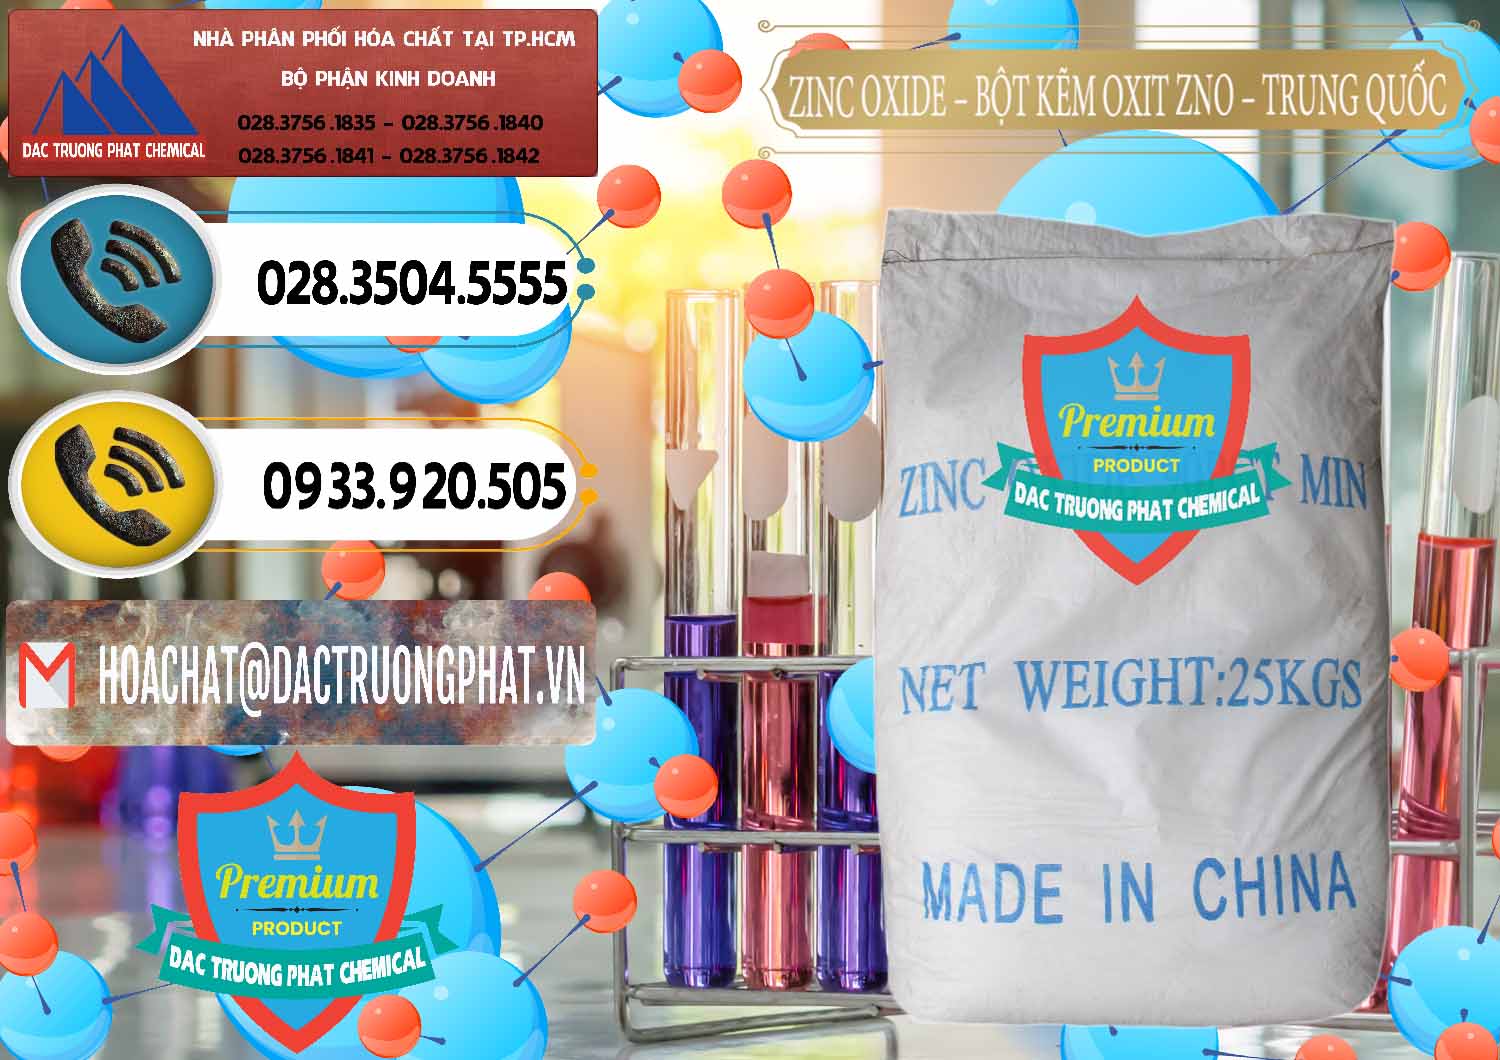 Nơi cung cấp - bán Zinc Oxide - Bột Kẽm Oxit ZNO Trung Quốc China - 0182 - Nơi chuyên bán & cung cấp hóa chất tại TP.HCM - hoachatdetnhuom.vn